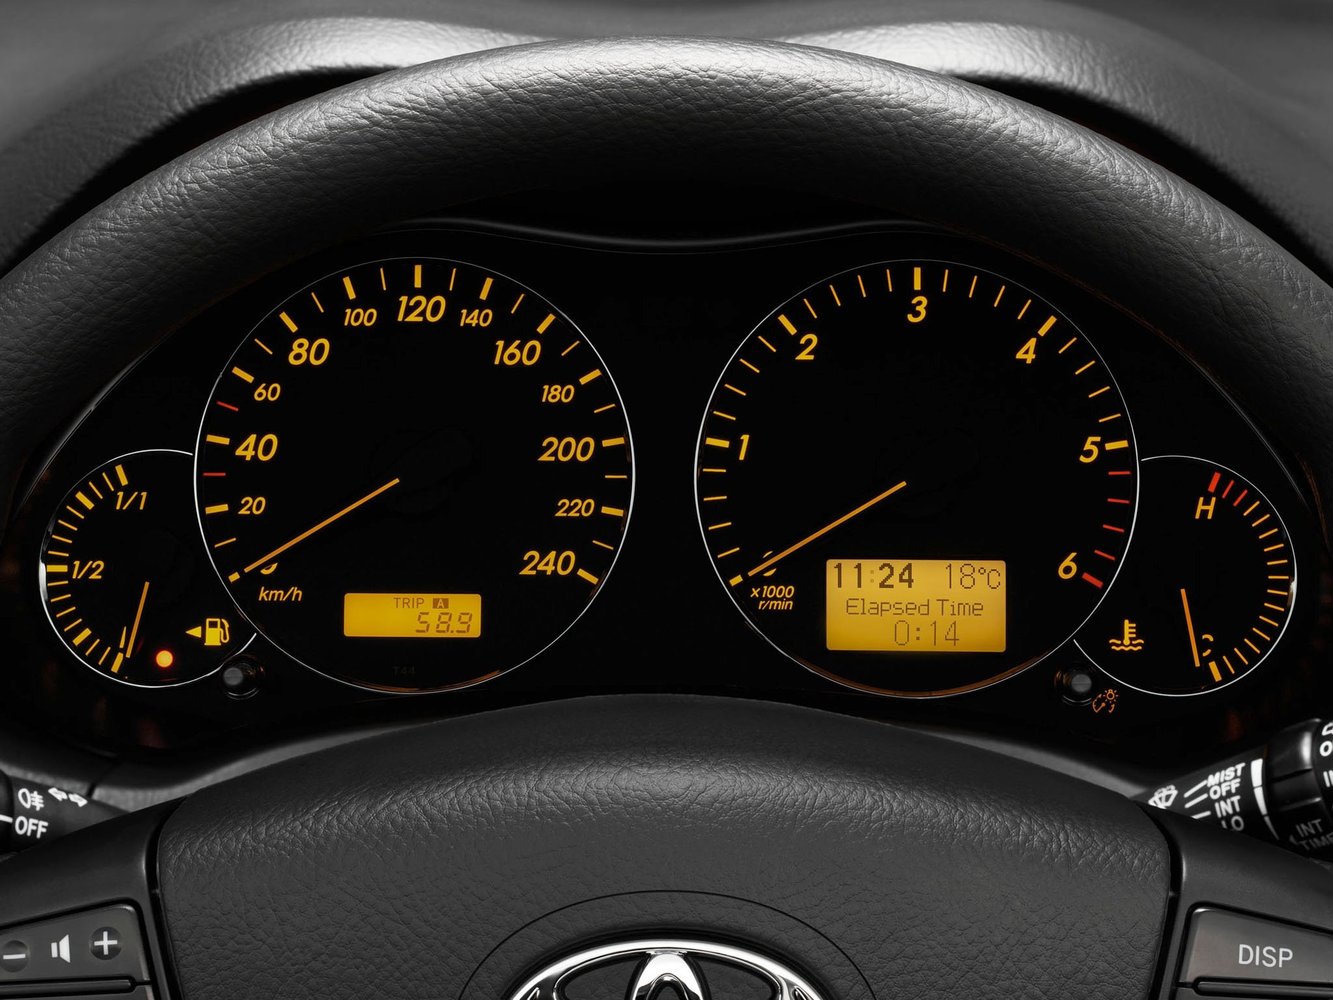 хэтчбек 5 дв. Toyota Avensis 2006 - 2008г выпуска модификация 1.6 MT (110 л.с.)